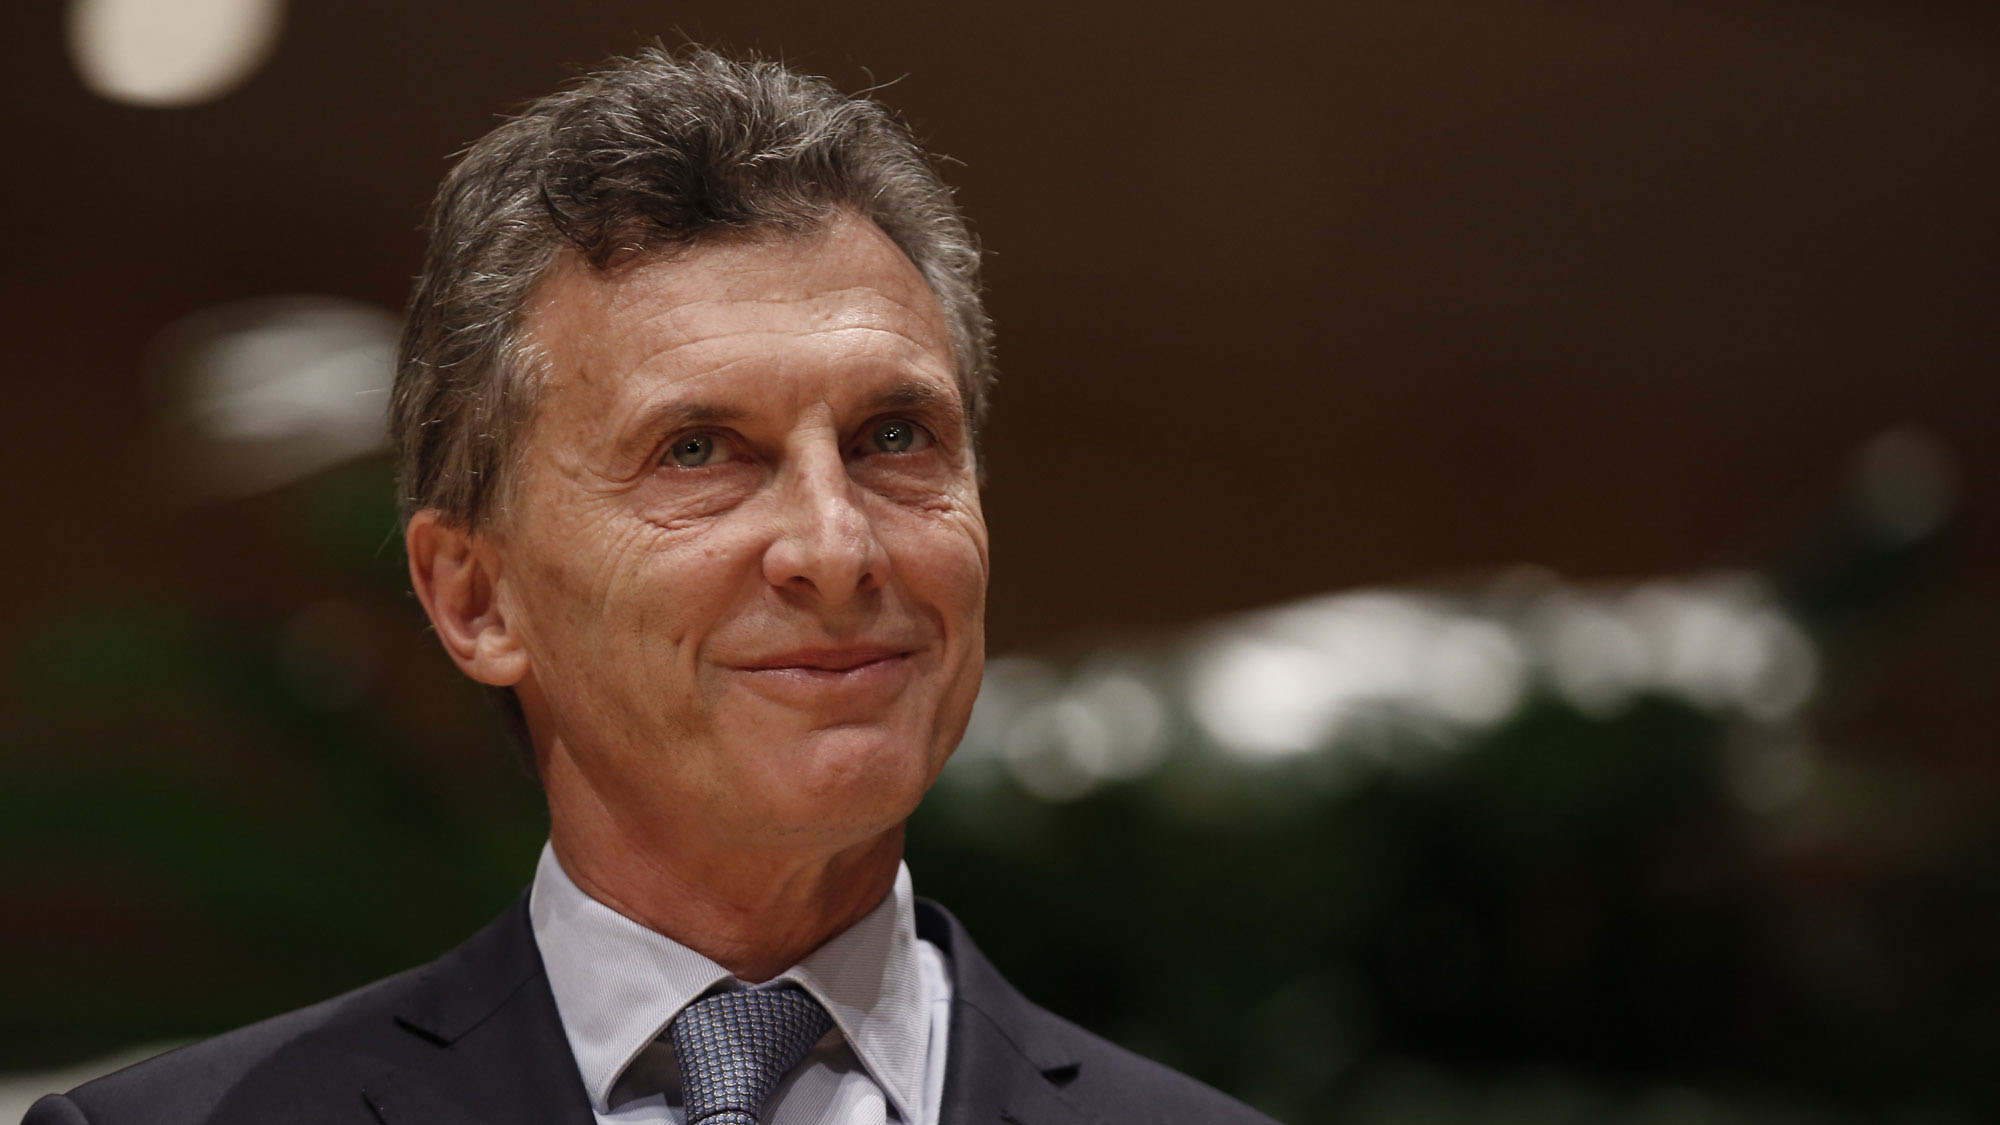 El presidente de Argentina recomendó a los ciudadanos mantenerse unidos y con esperanza